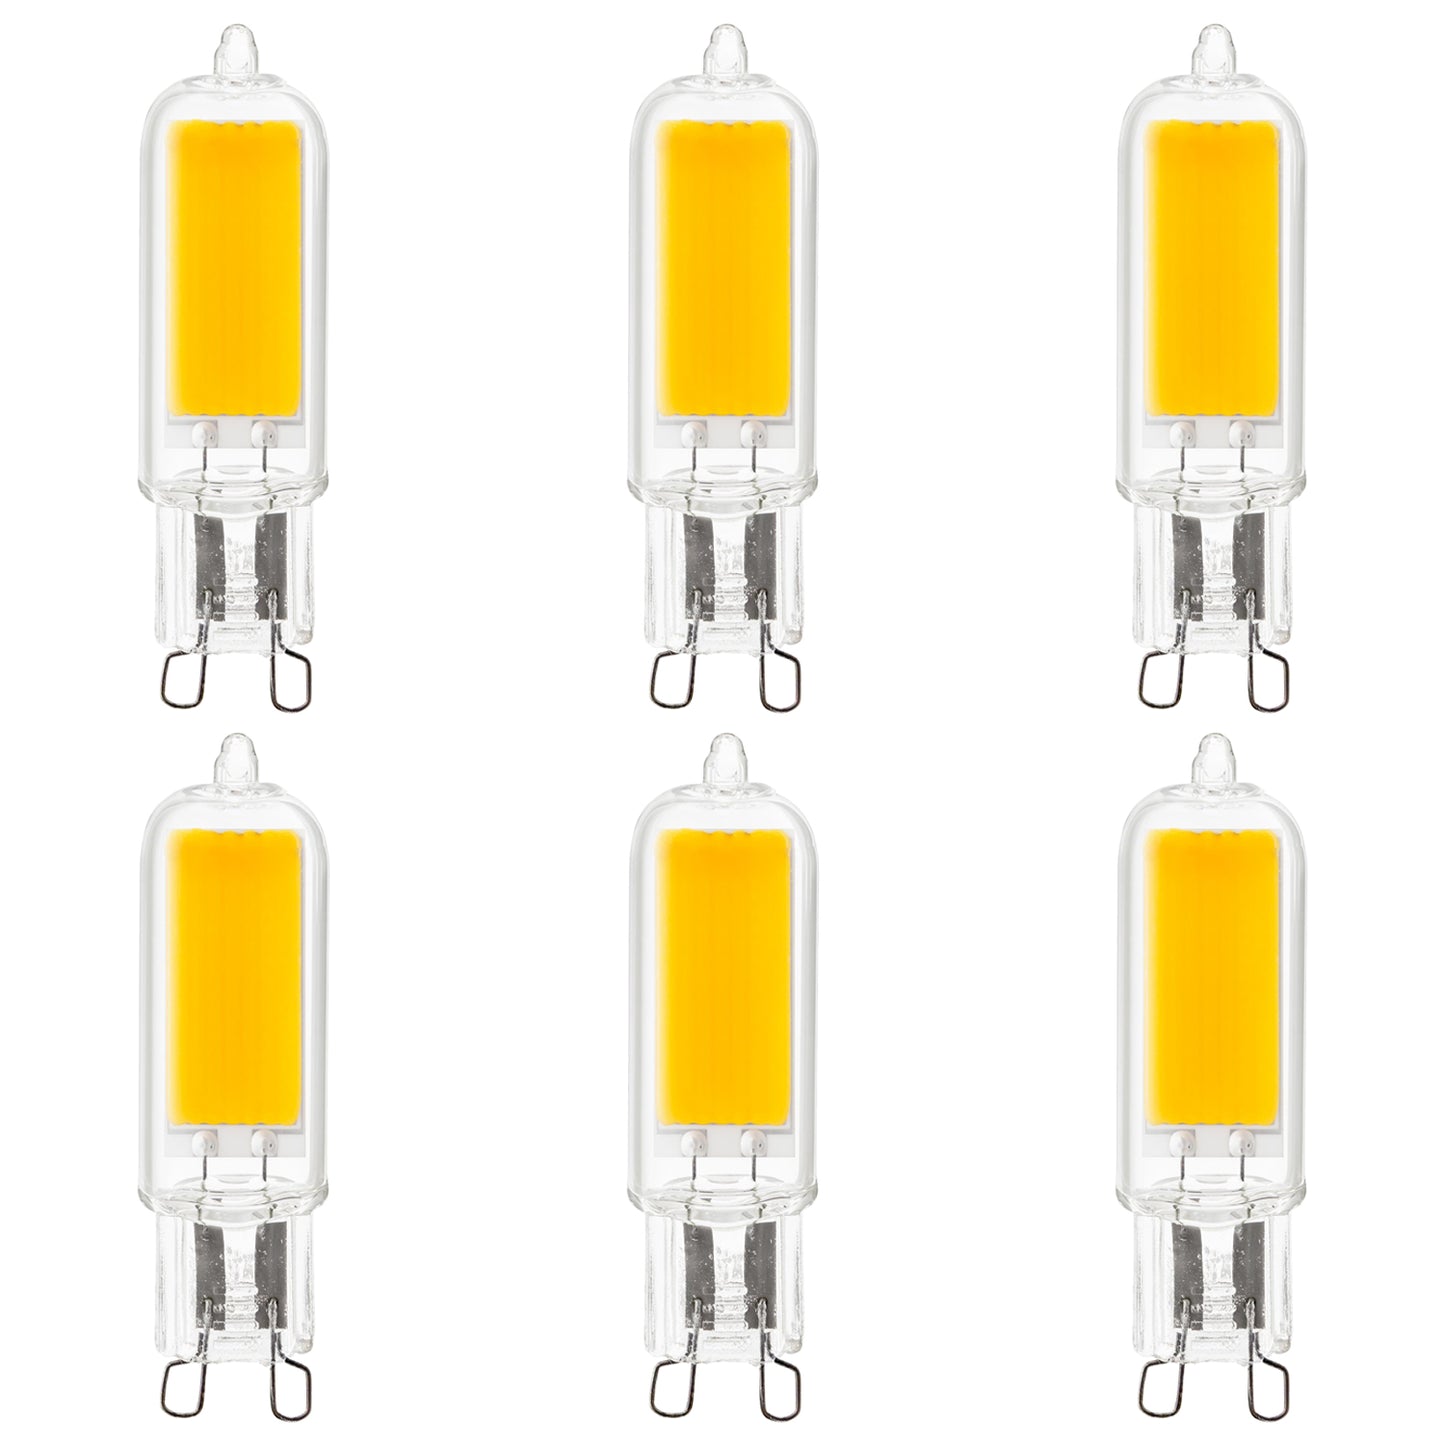 Sunlite LED G9 Light Bulbs, 3 Watt (40W Halogen Equivalent), 400 Lumen, 3000K Warm White, G9 Base